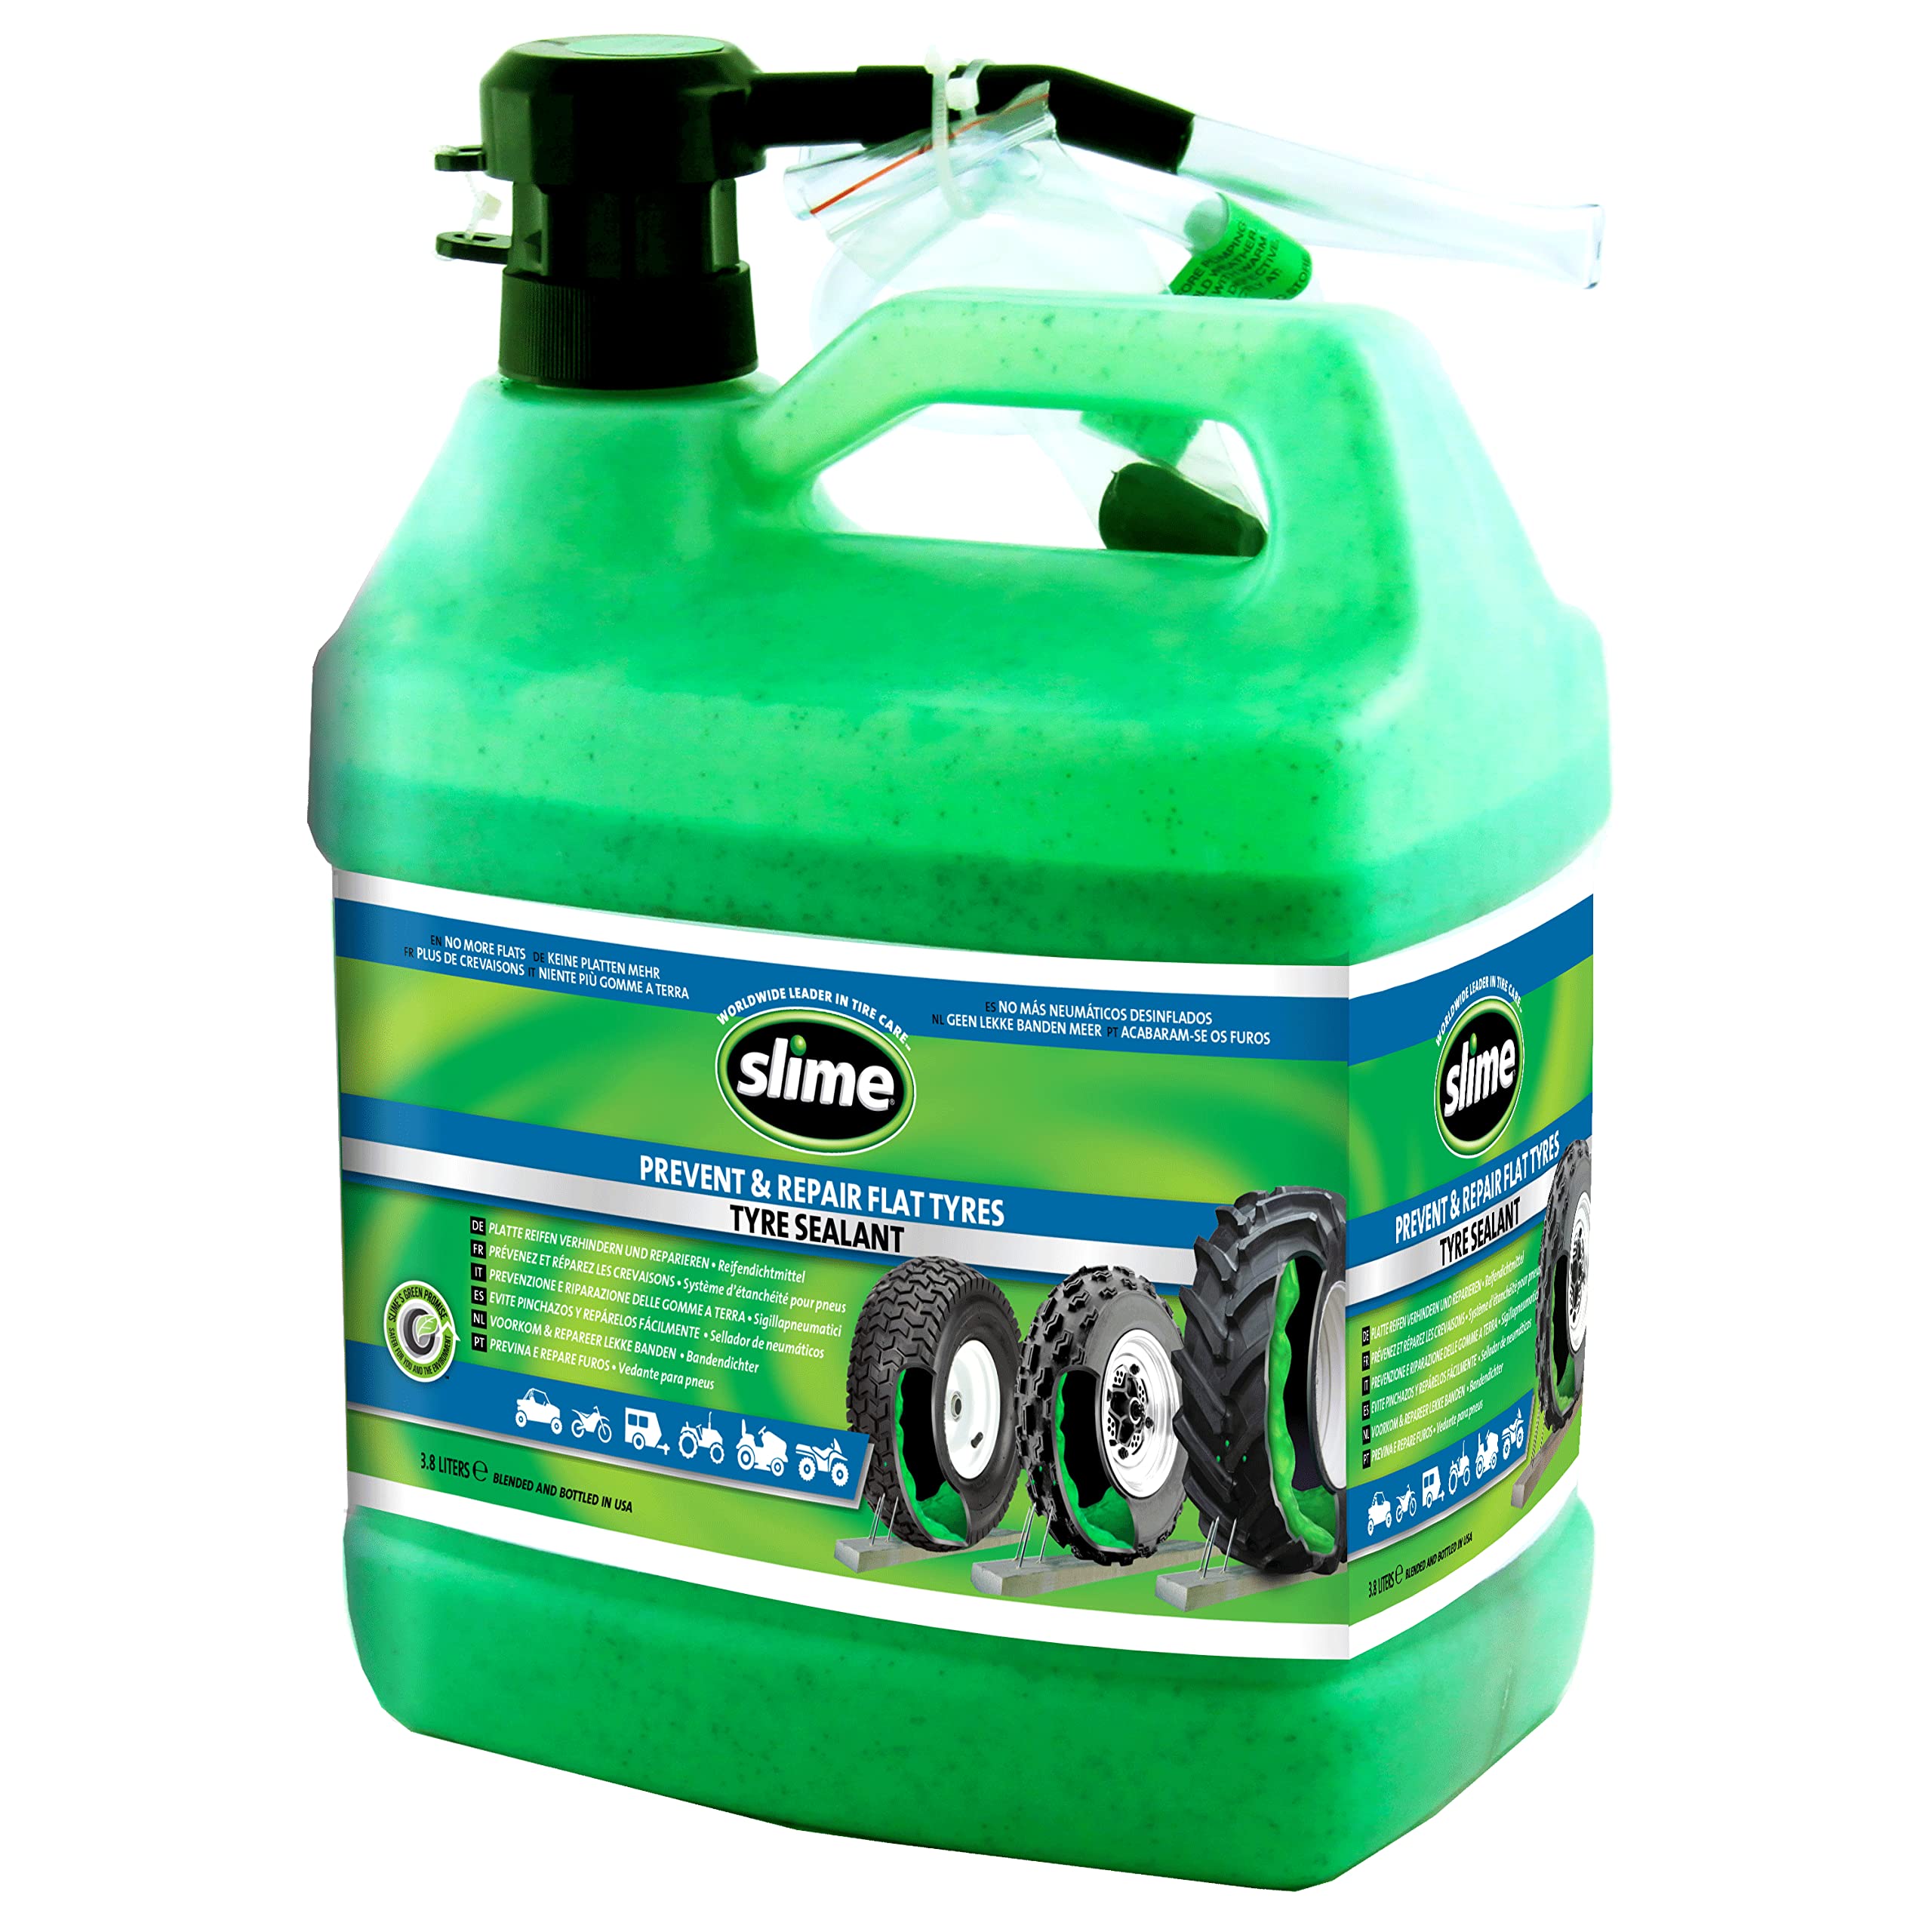 Slime SDSB-1G/02-IN Dichtmittel für Reifenreparatur bei Platten mit Pumpe, Geeignet für Traktoren, Lkw, Trailer, Geländefahrzeuge und Quads, Ungiftig, Umweltfreundlich, 3,78-l-Flasche (1 Gallone)